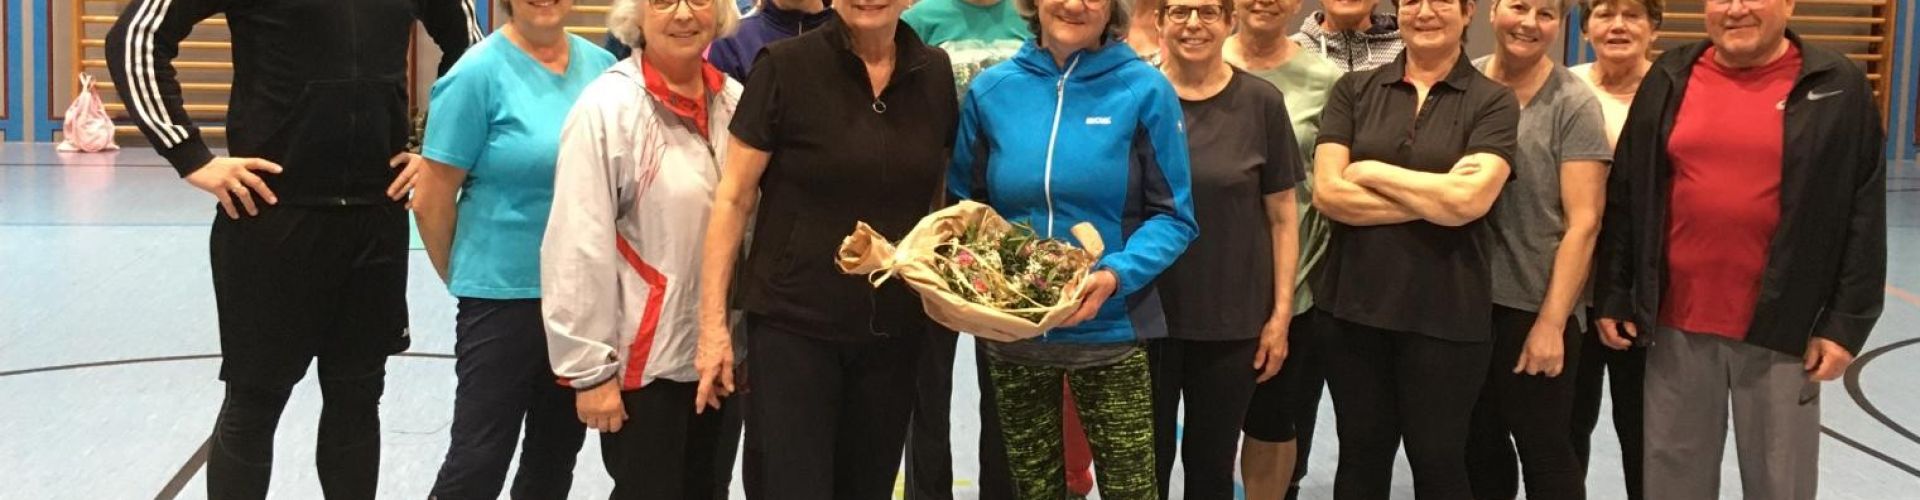 Die Gymnastiksparte um Leiterin Ingrid Hirschbolz gratulierte Elisabeth Metzger, vormals Hutterer, zur Eheschließung.